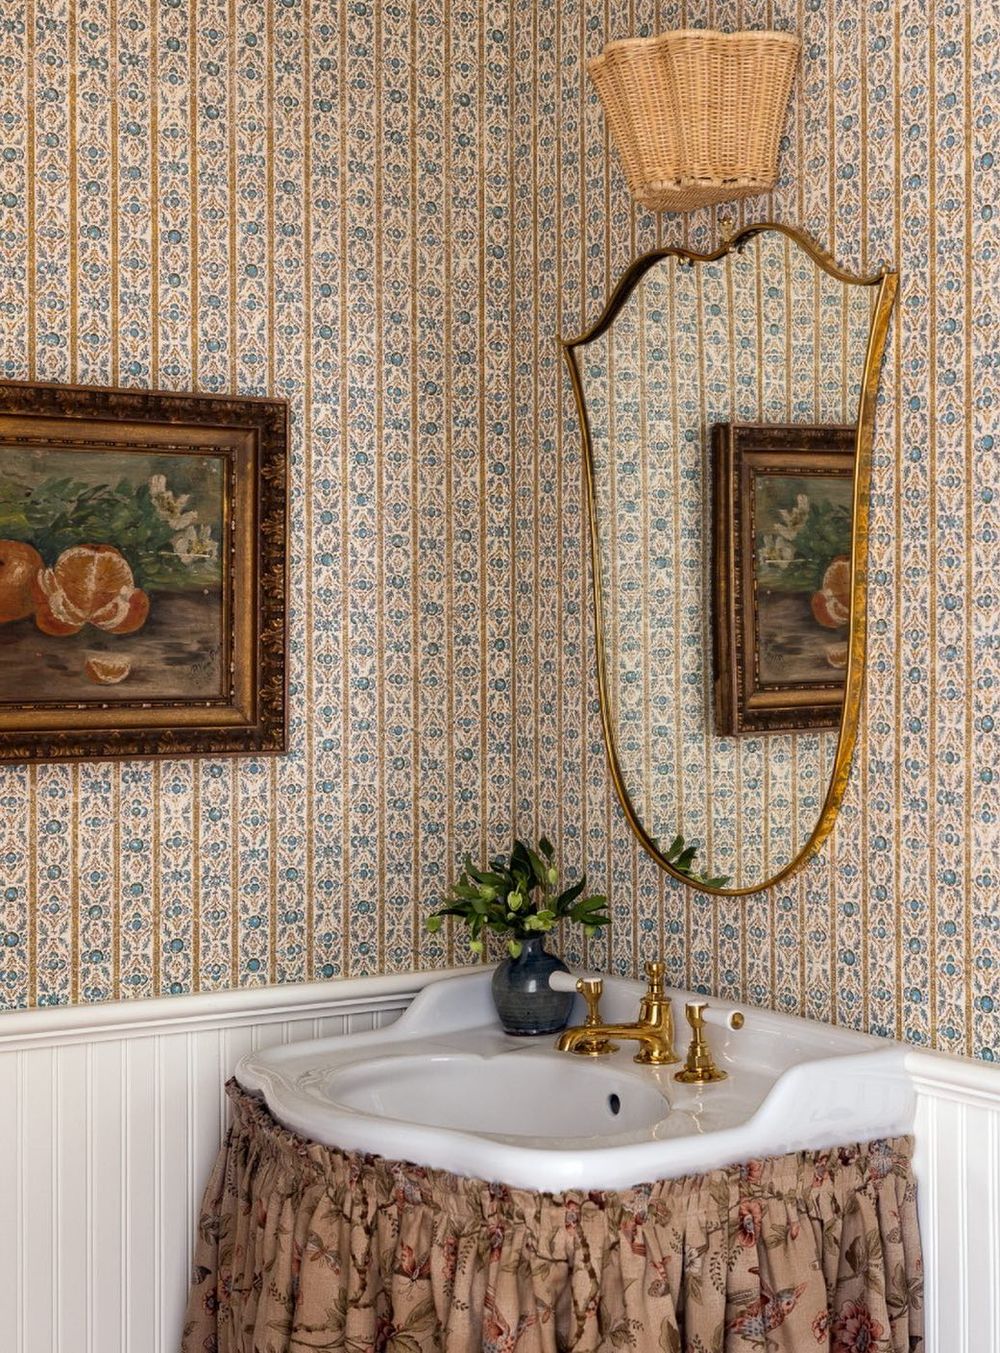 Vintage bathroom skirted vanity heidicaillierdesign